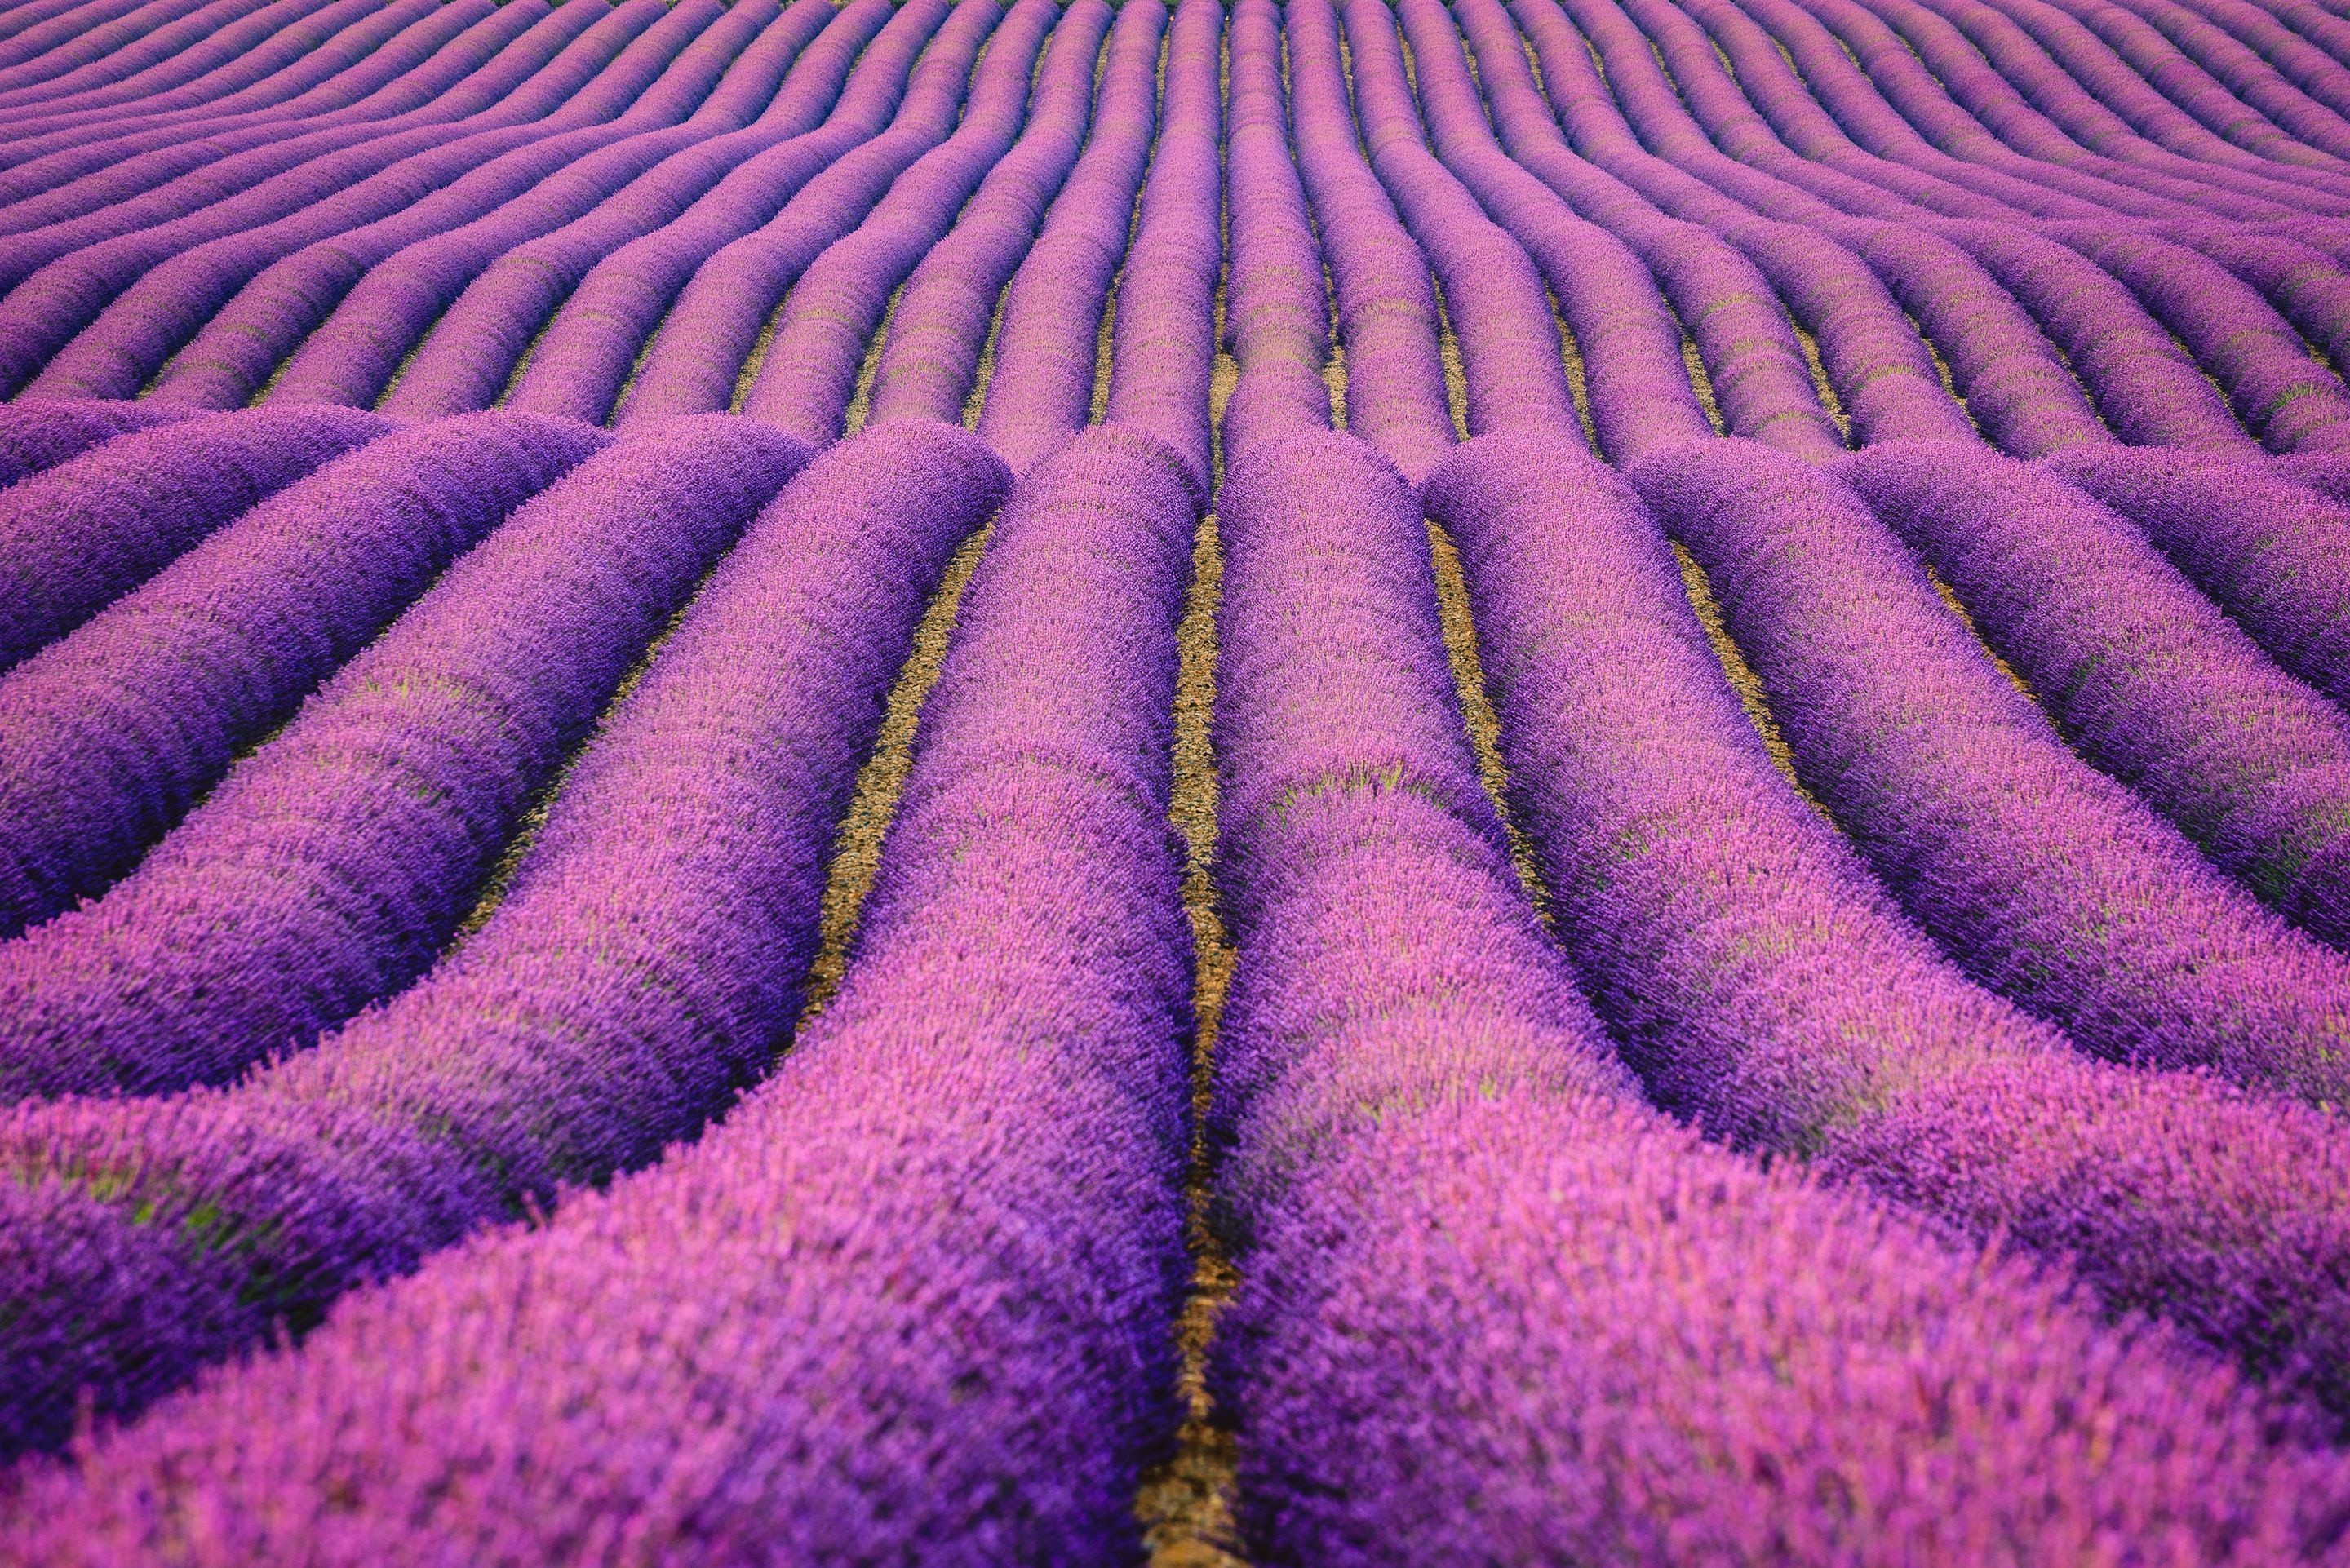 2880x1922 Lavendel HD Wallpaper | Hintergrund |  | ID:917432 - Wallpaper  Abyss